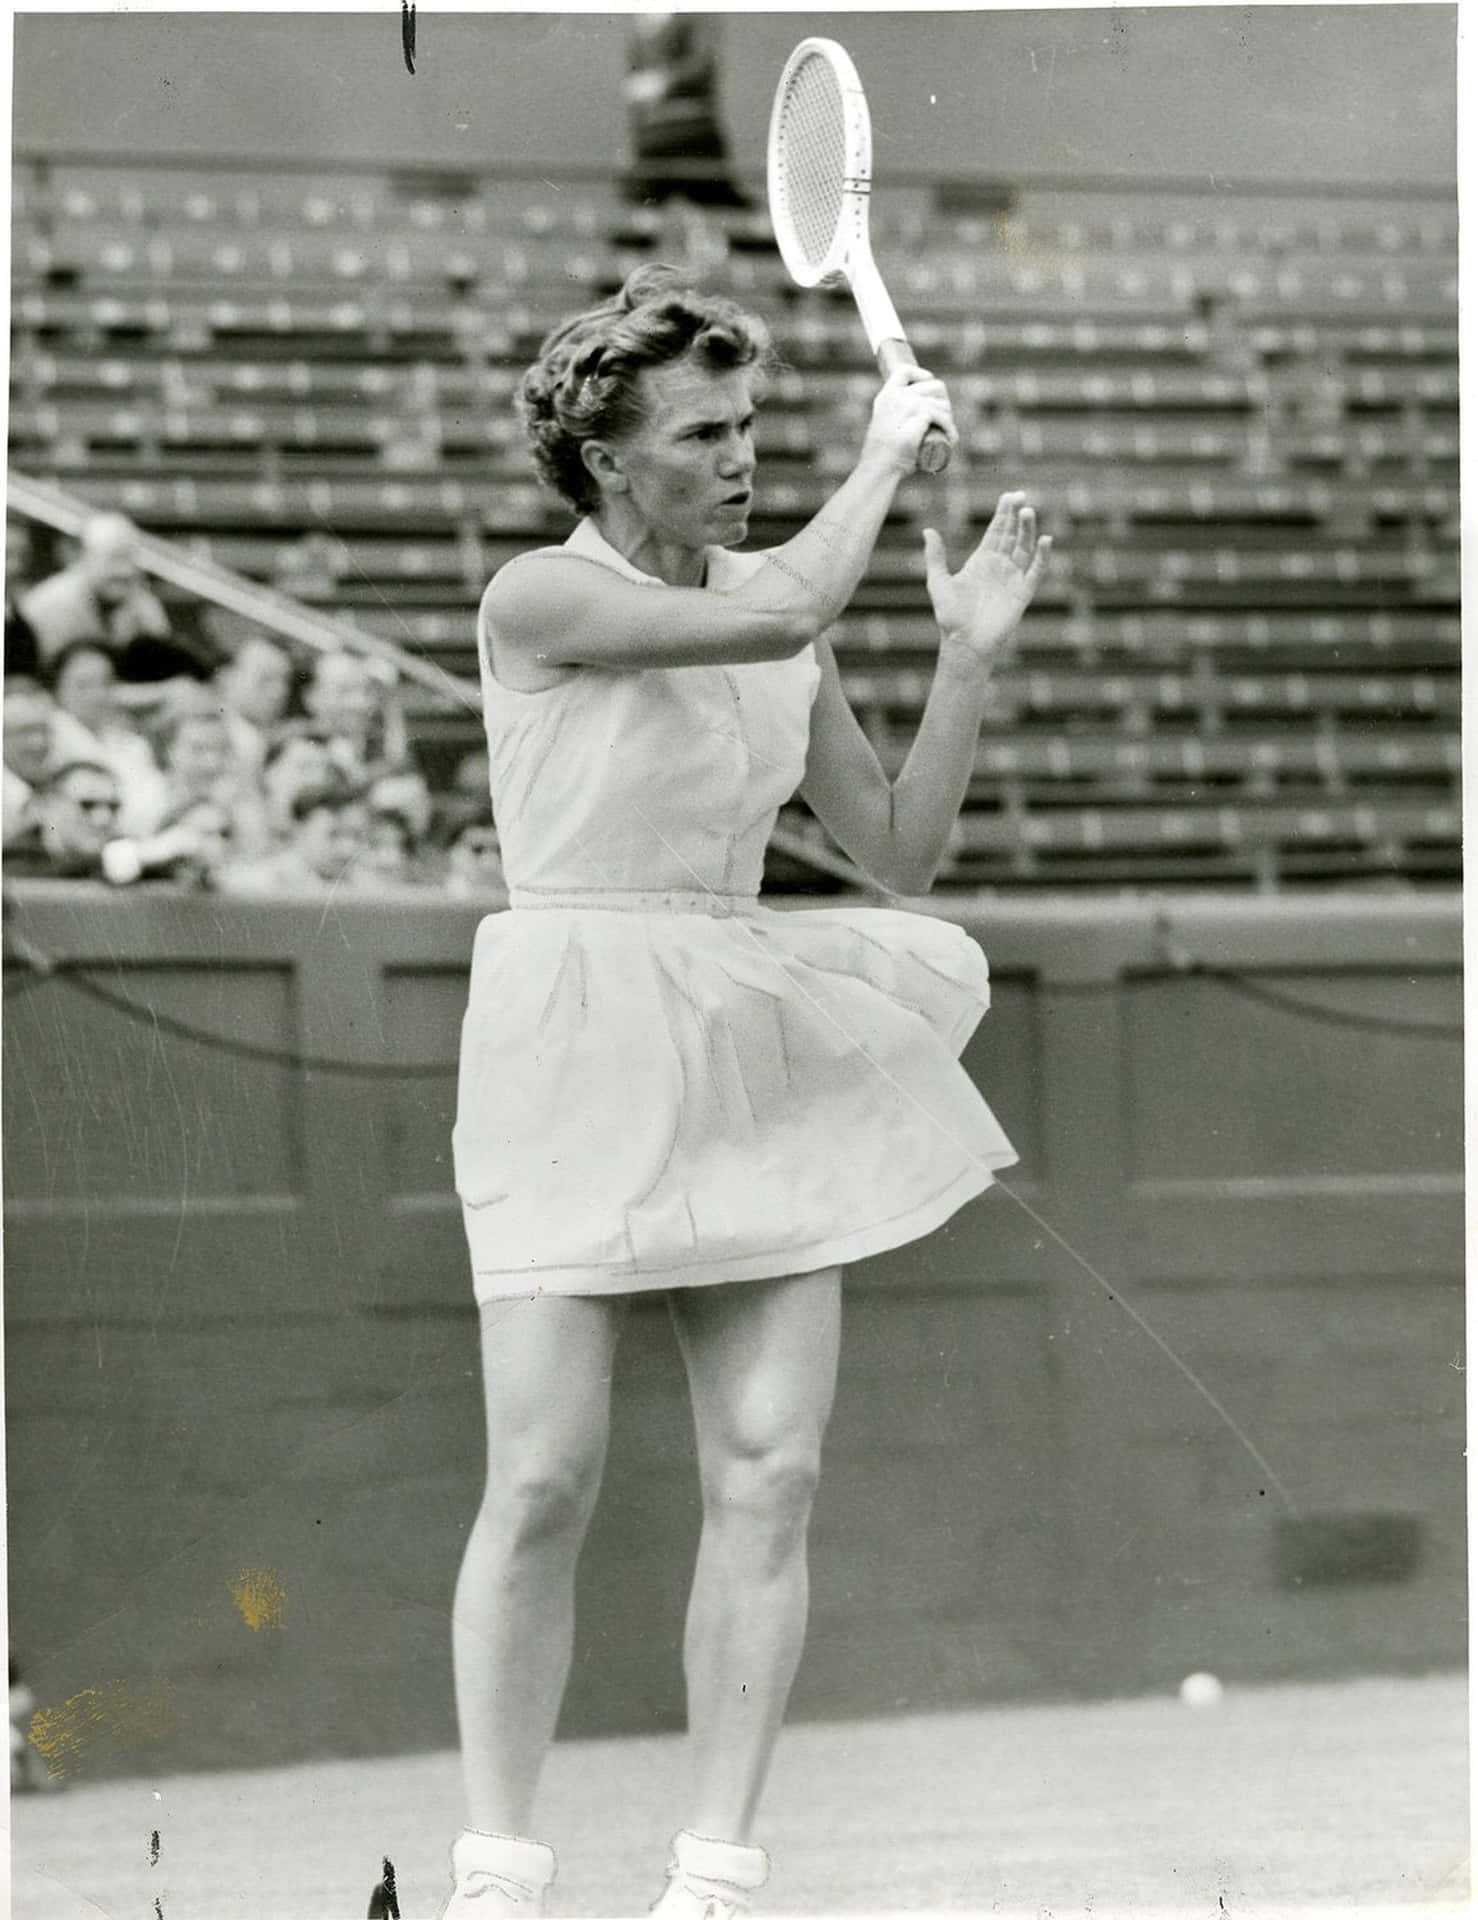 Shirley Fry Irvin: An Inspiring American Tennis Champ. Wallpaper